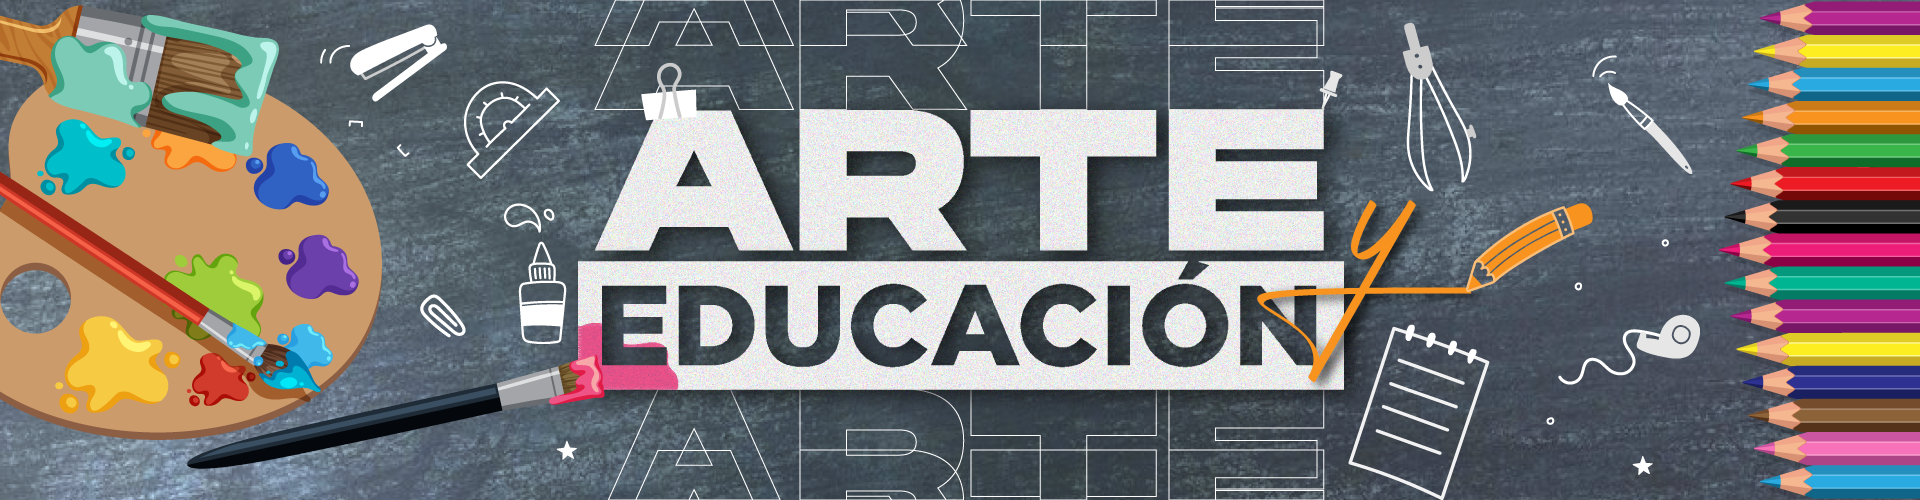 Arte y educación